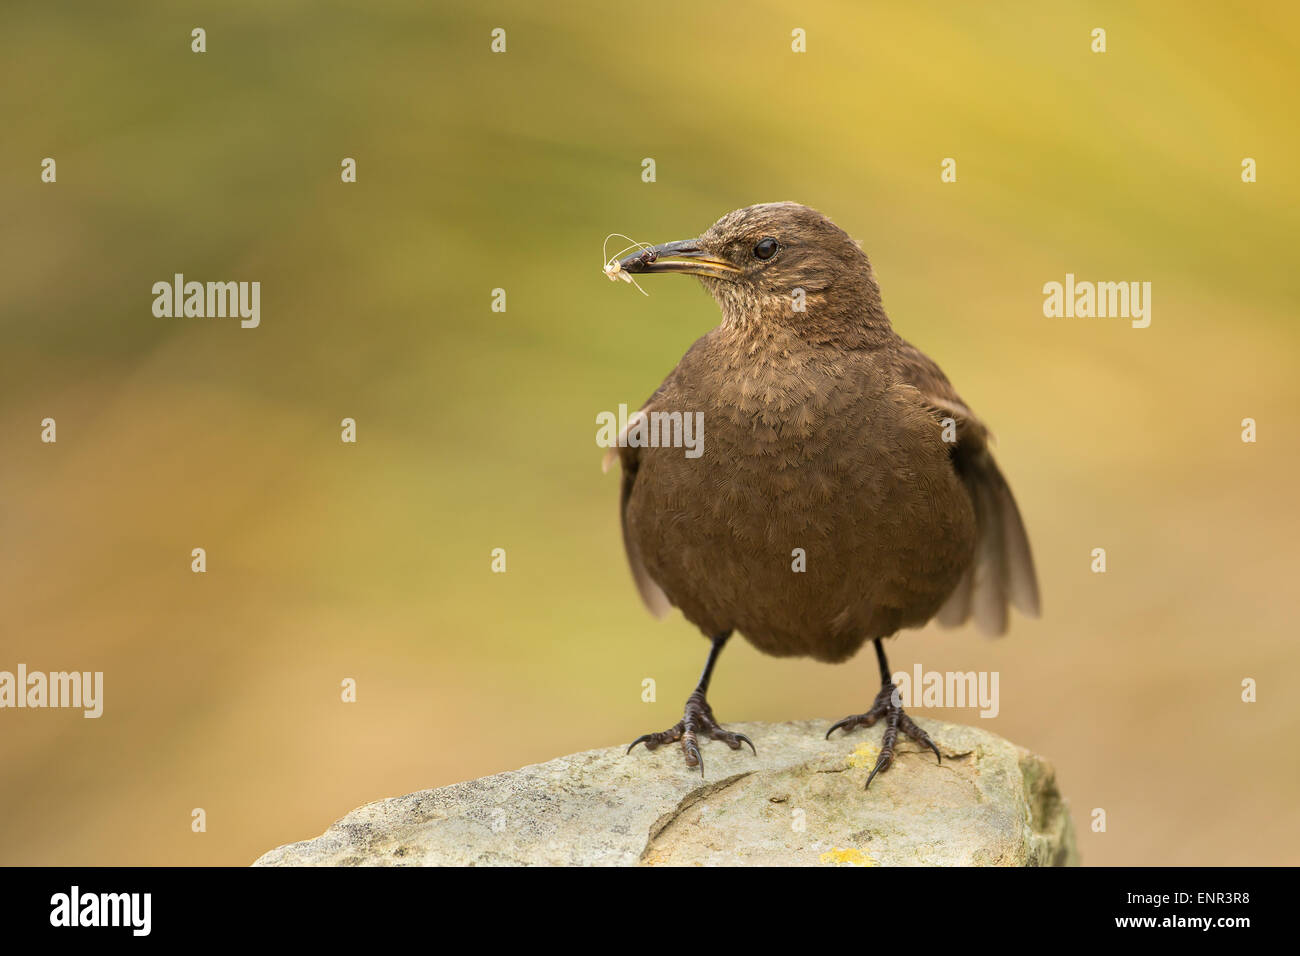 Tussac-oiseau perché sur une pierre contre un arrière-plan vert Banque D'Images